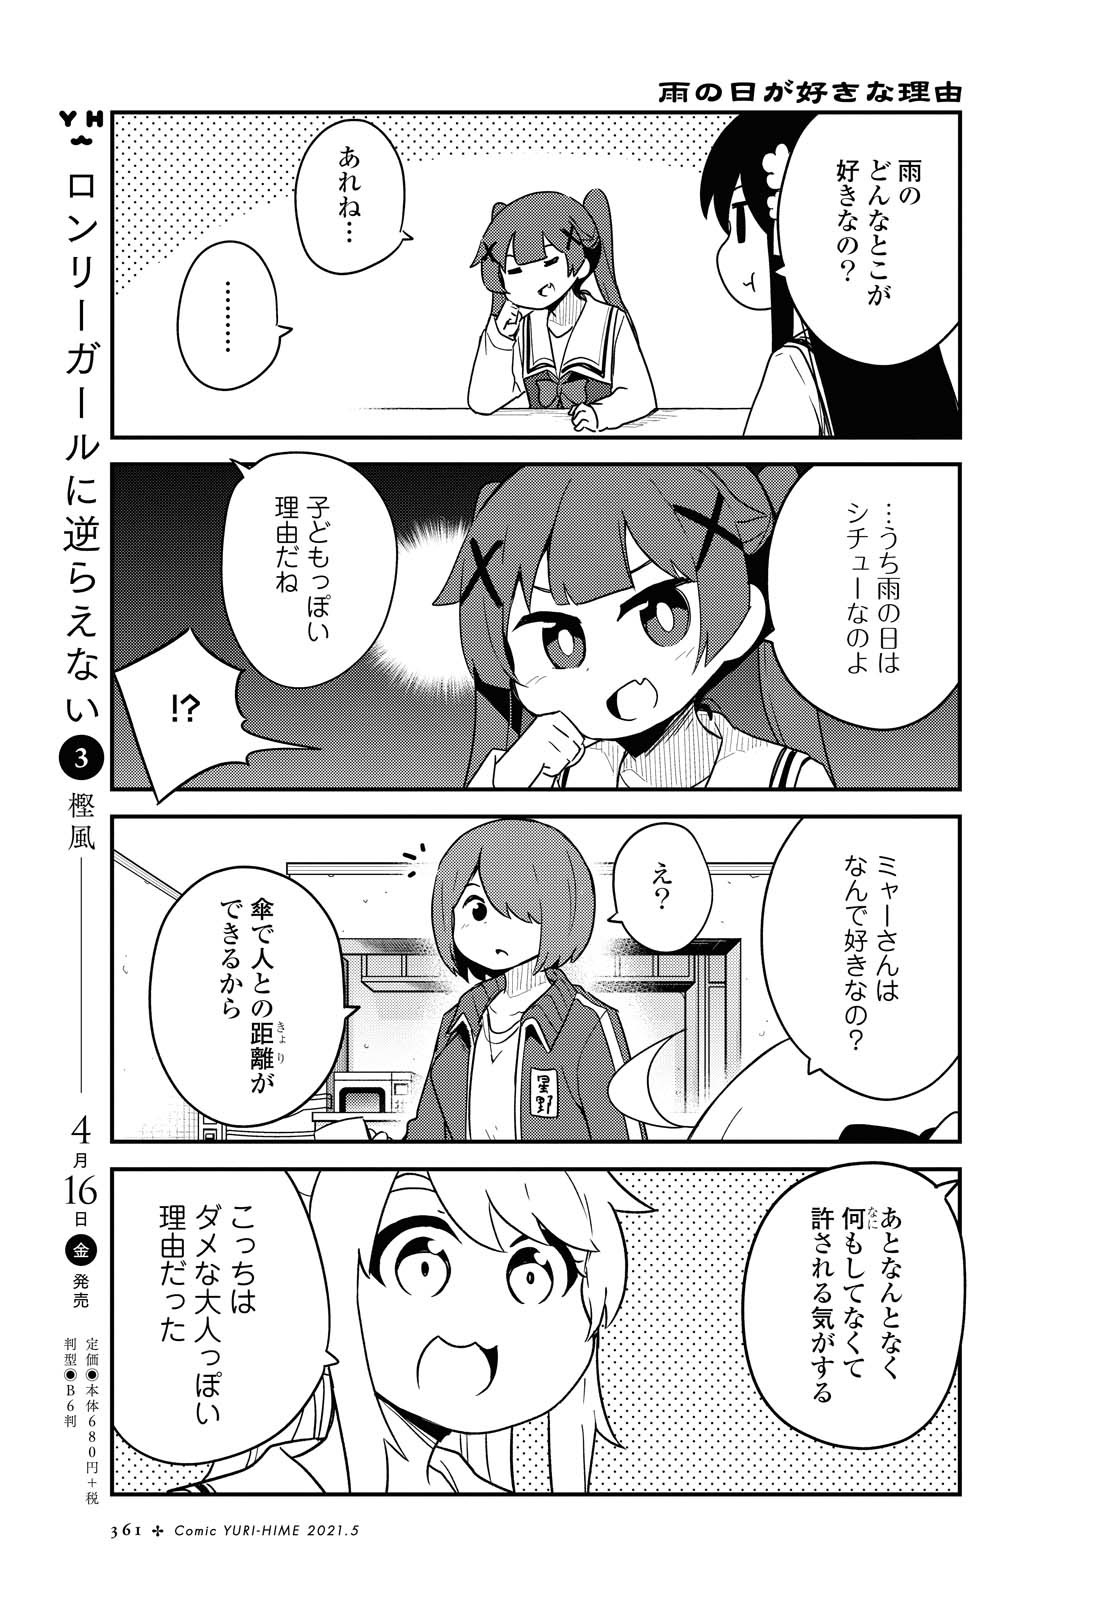 Watashi ni Tenshi ga Maiorita! - Chapter 79 - Page 5